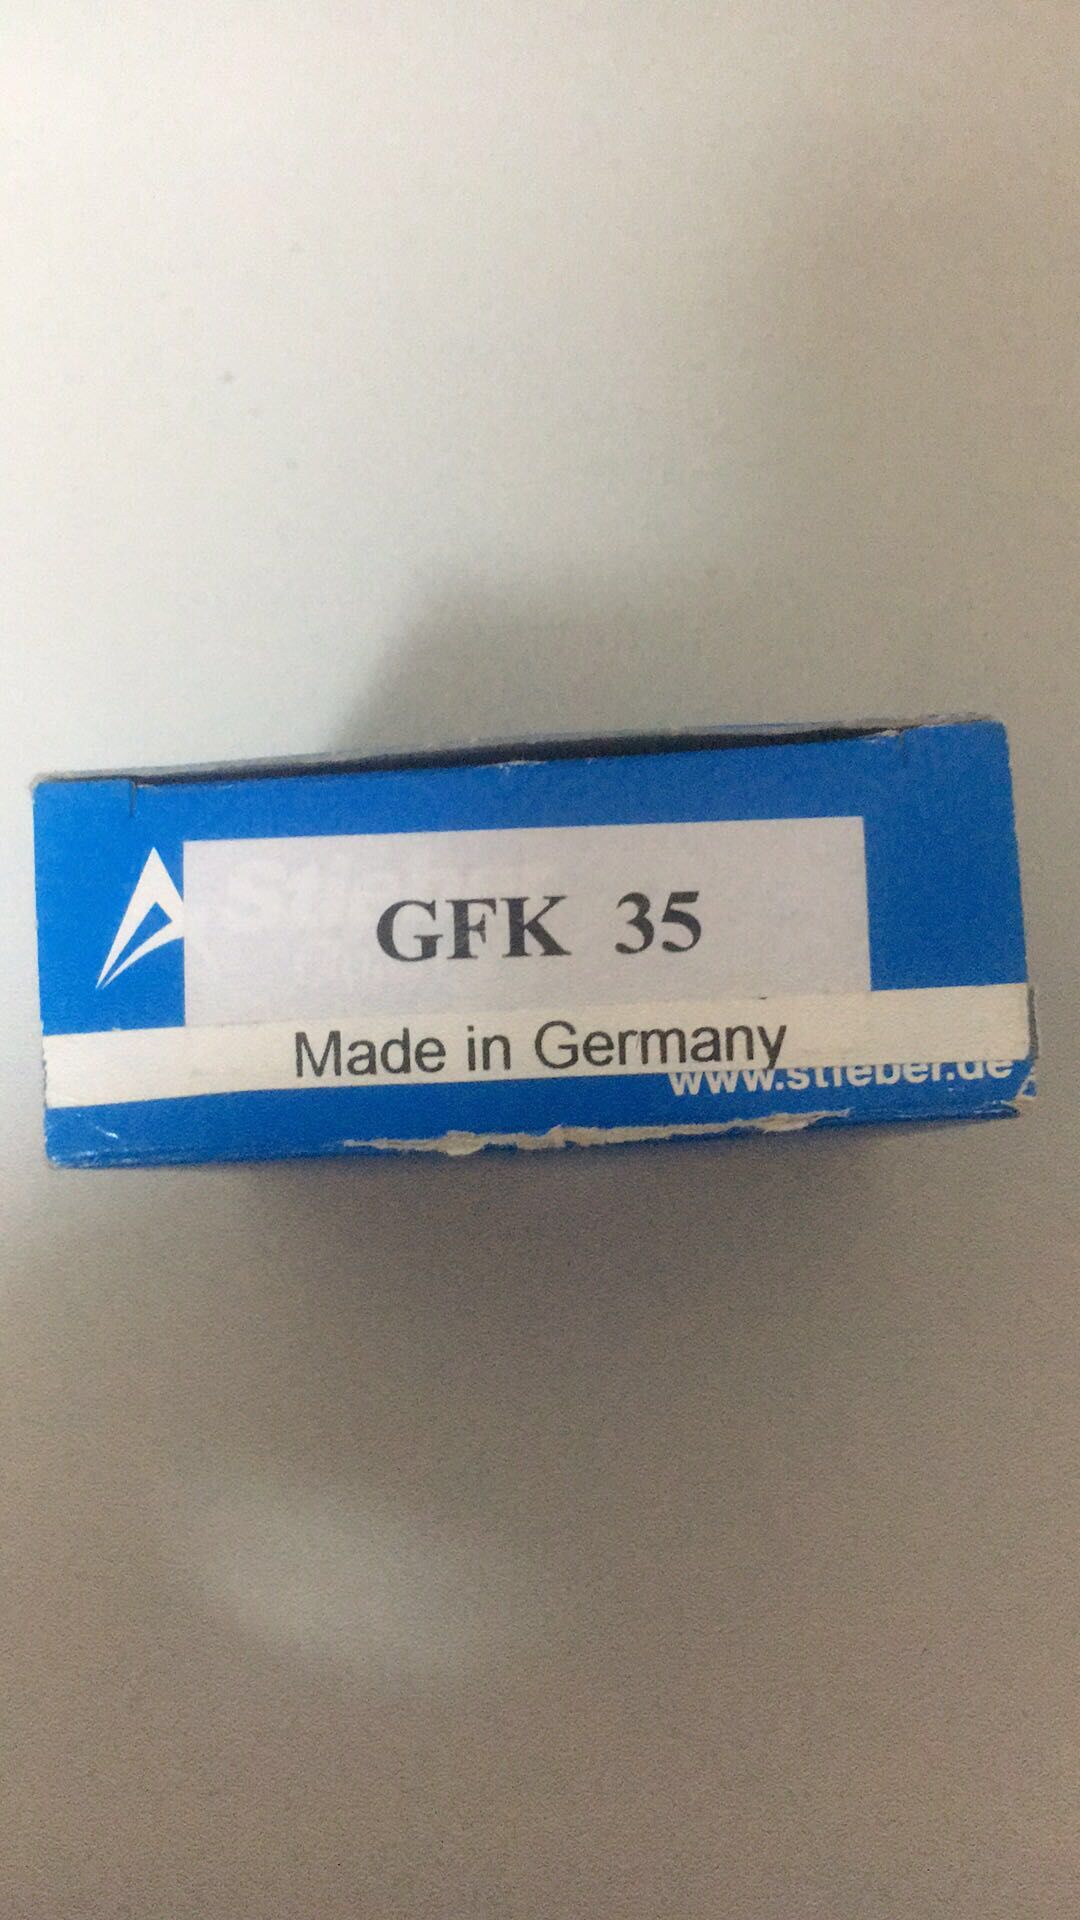 德国stieber轴承 gfk35轴承.jpg